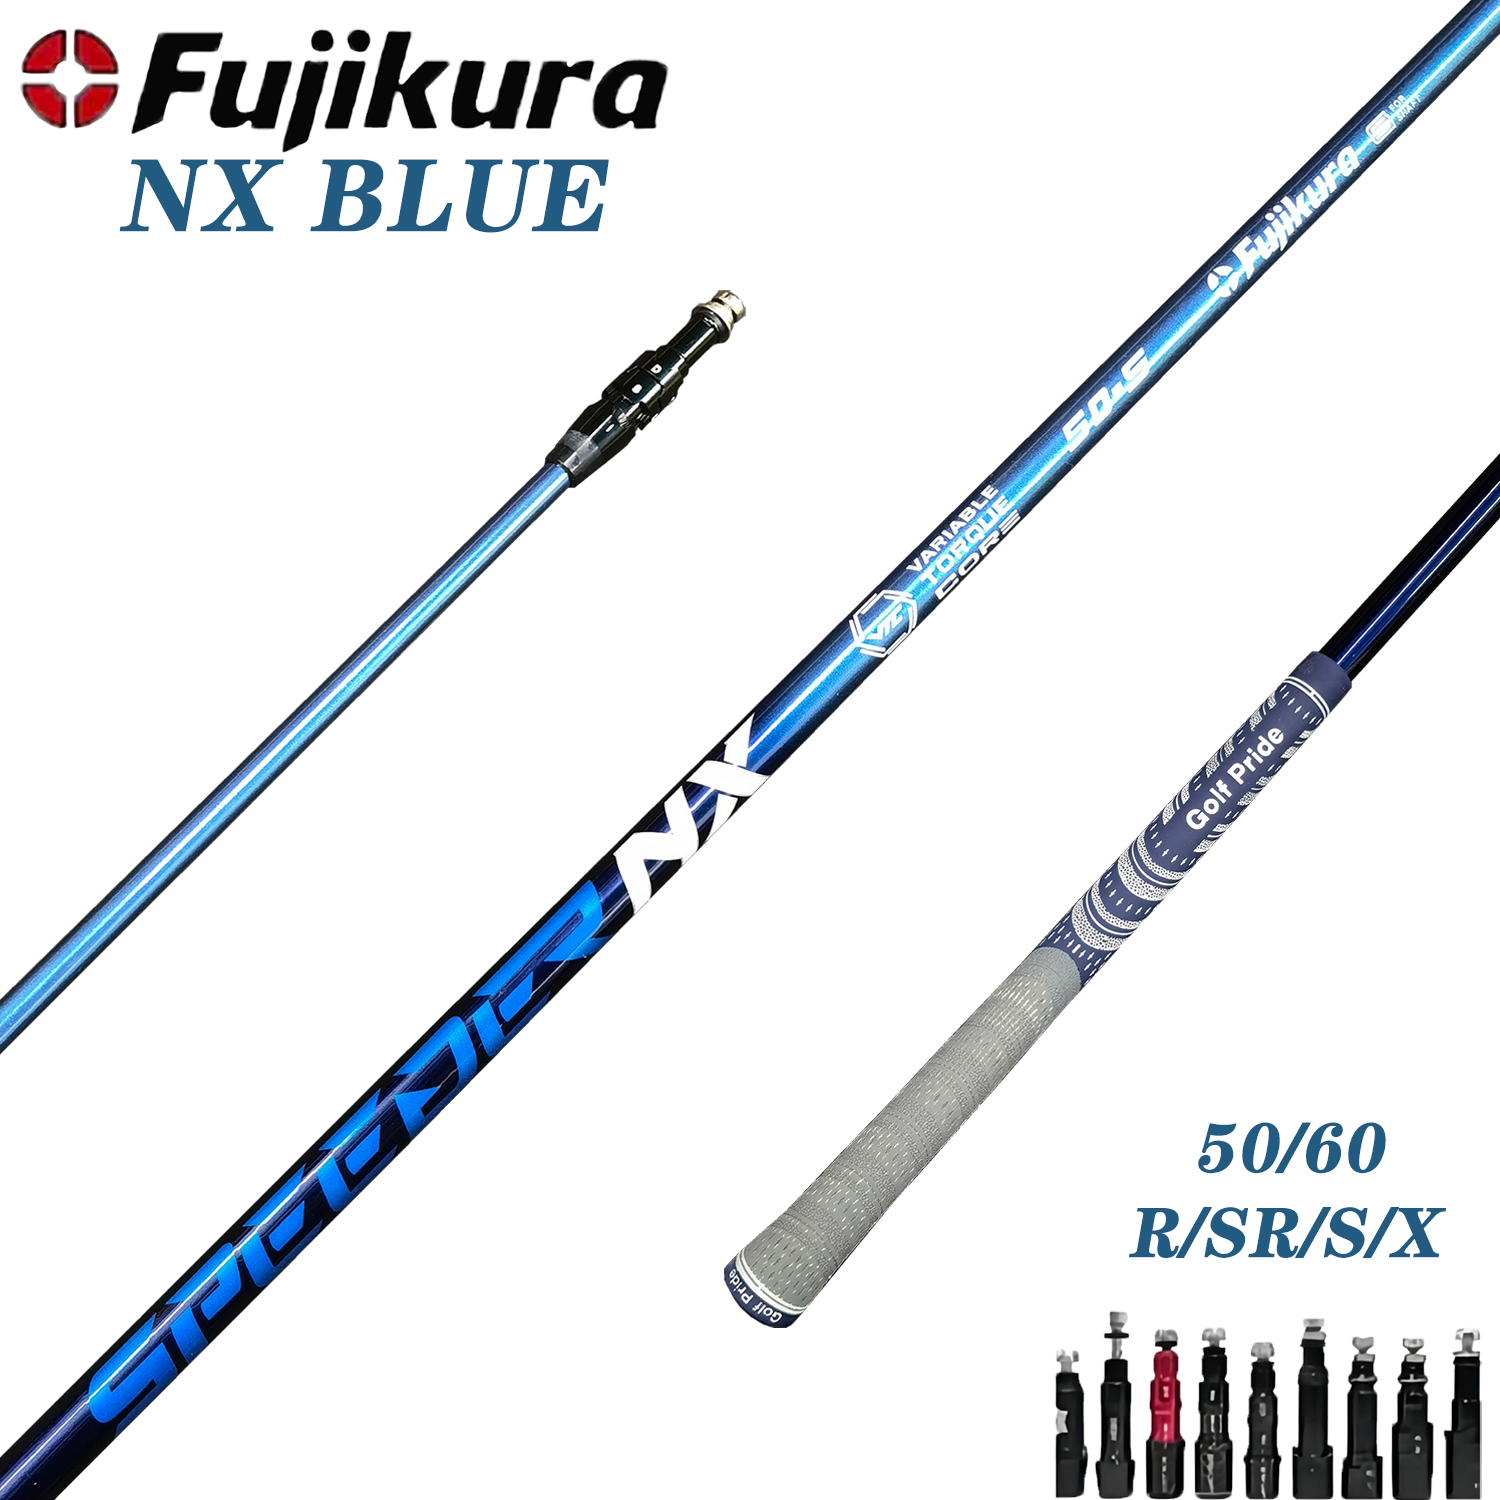 Eje de golf personalizable - Fujikura SPEEDER NX 50/60 Azul, Ejes de palo - Punta 0.335 - Opciones flexibles S, R, X - Empuñadura de manga de montaje gratuito